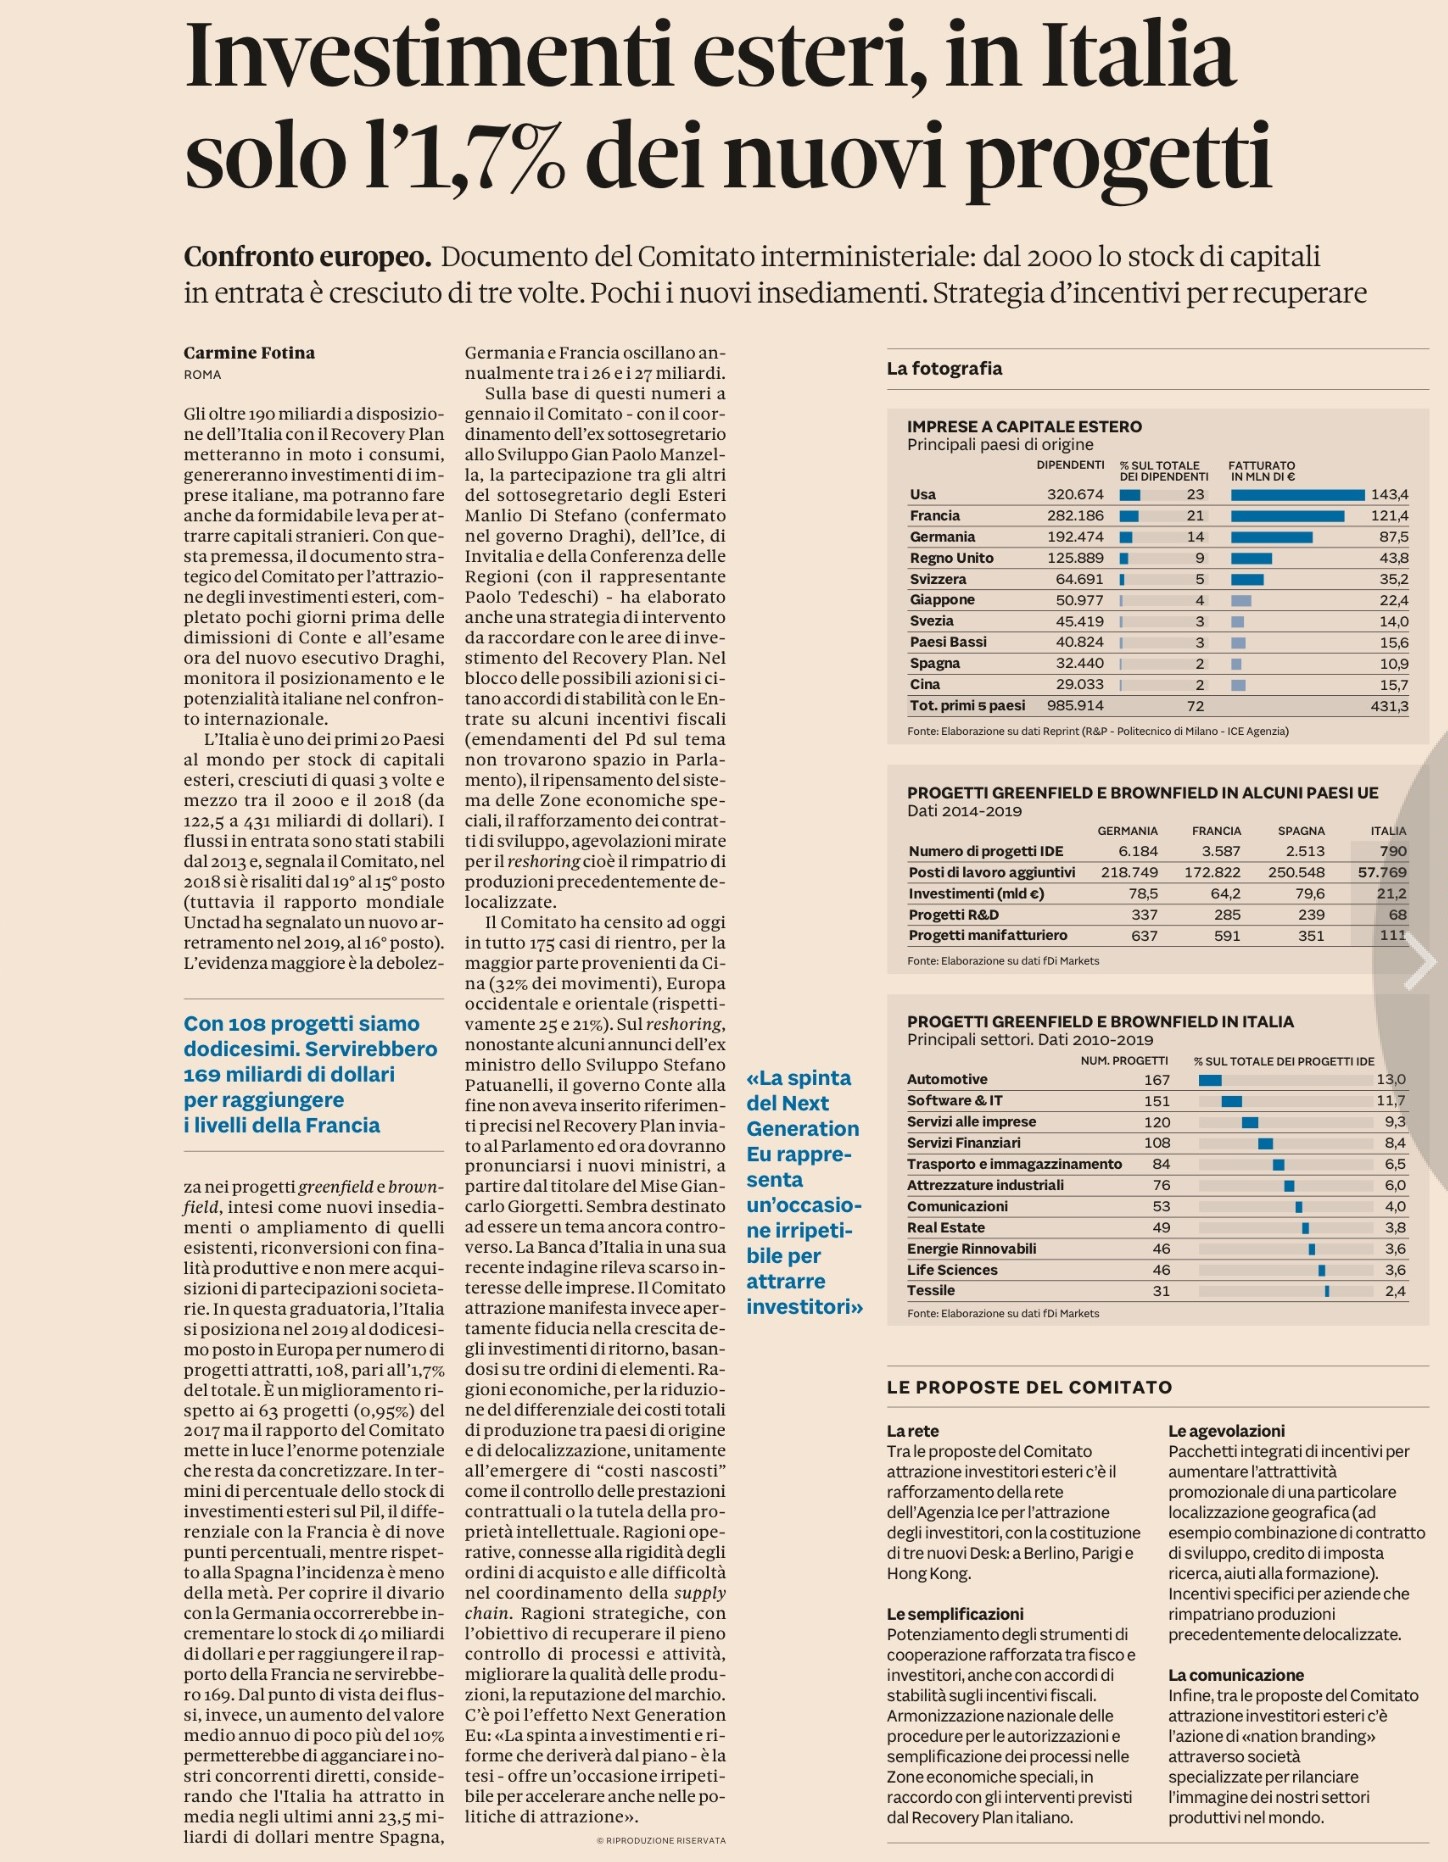 Investimenti esteri: Italia meno attrattiva, scarseggiano i nuovi progetti 